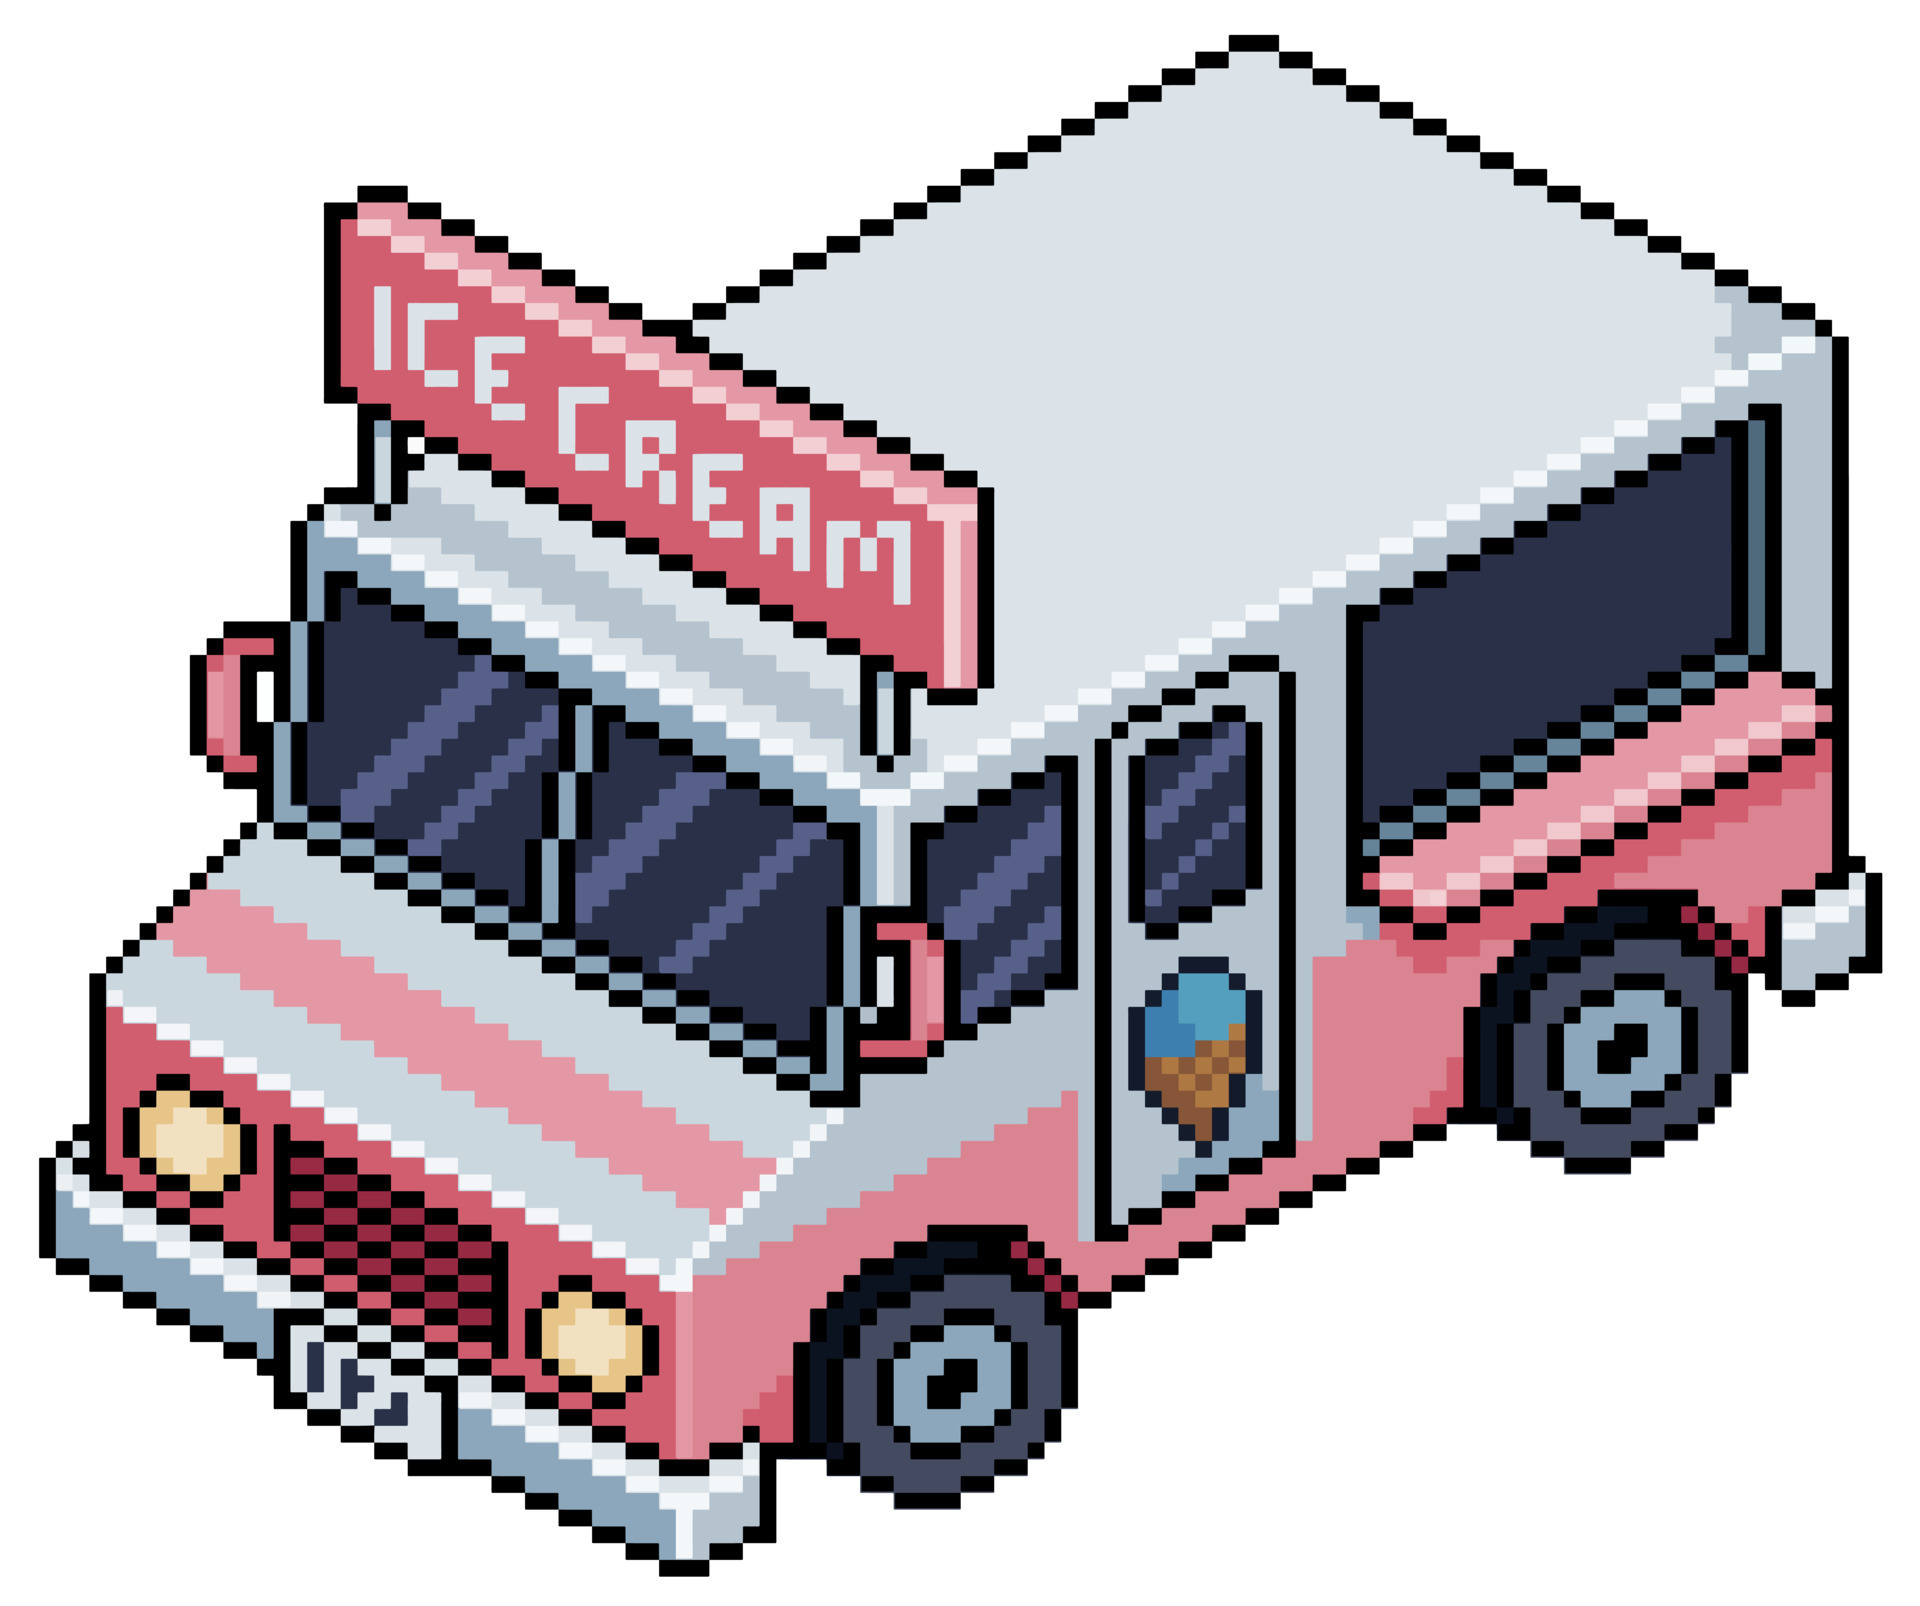 Item de jogo de bits de sorvete pixel art em fundo branco